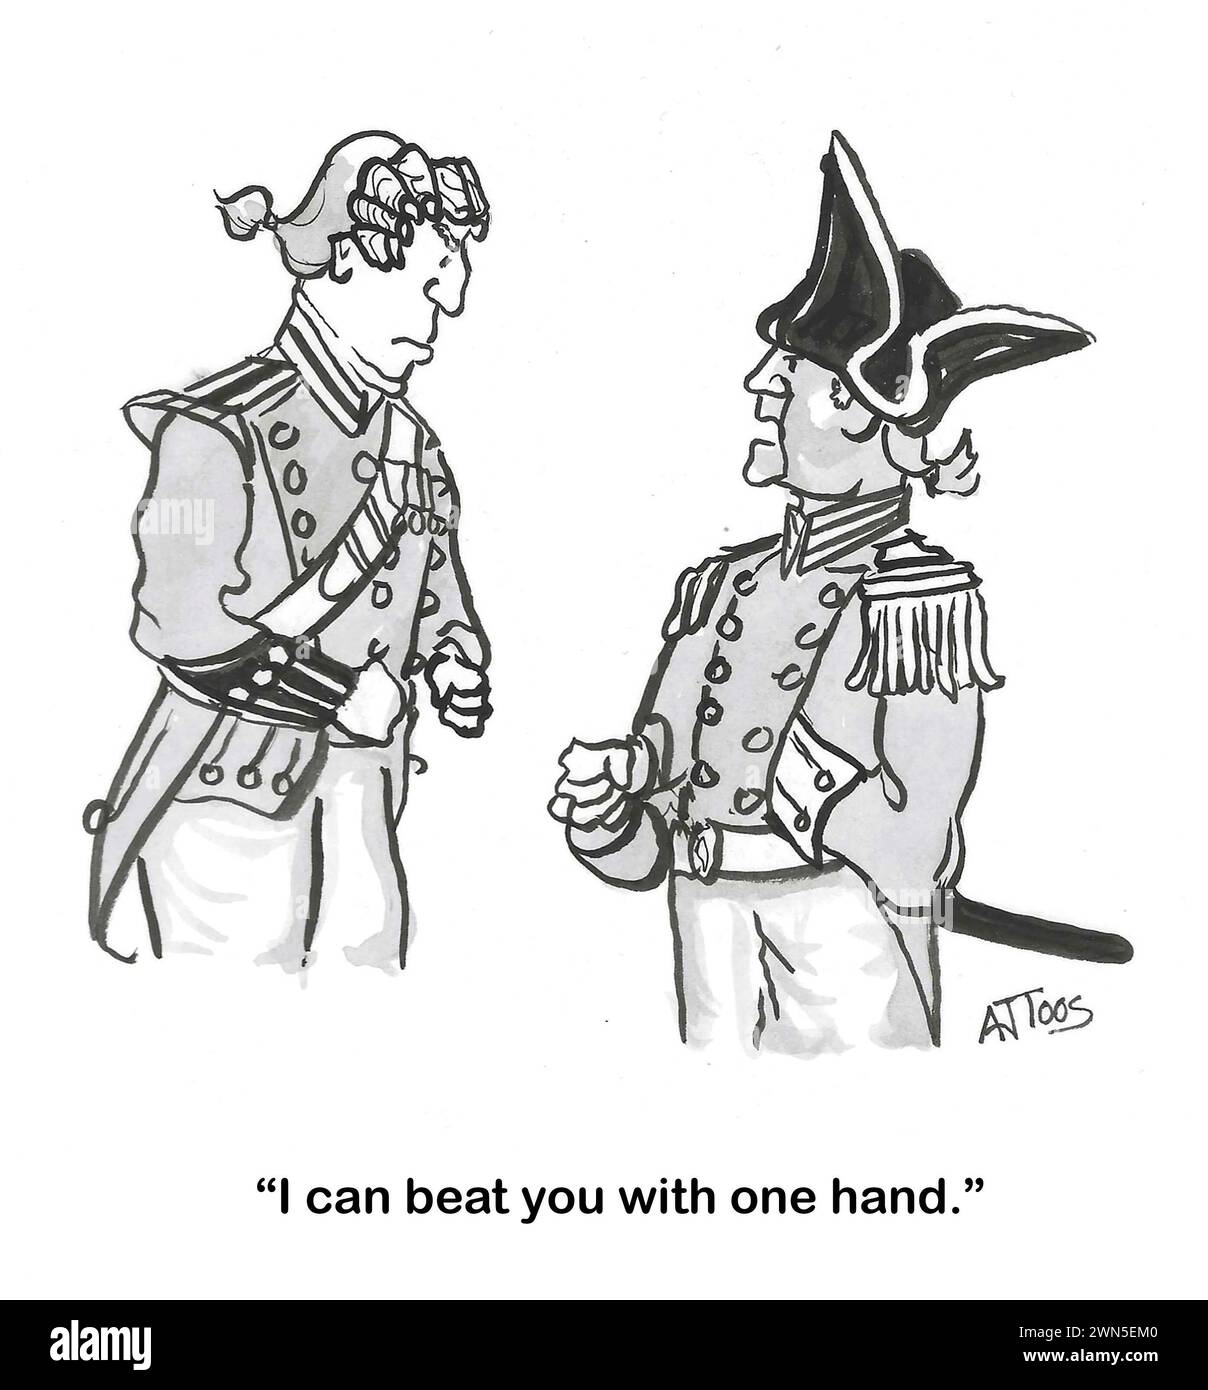 Il cartone animato BW di due soldati, uno è Napoleone, e combatterà con una sola mano il suo avversario. Foto Stock